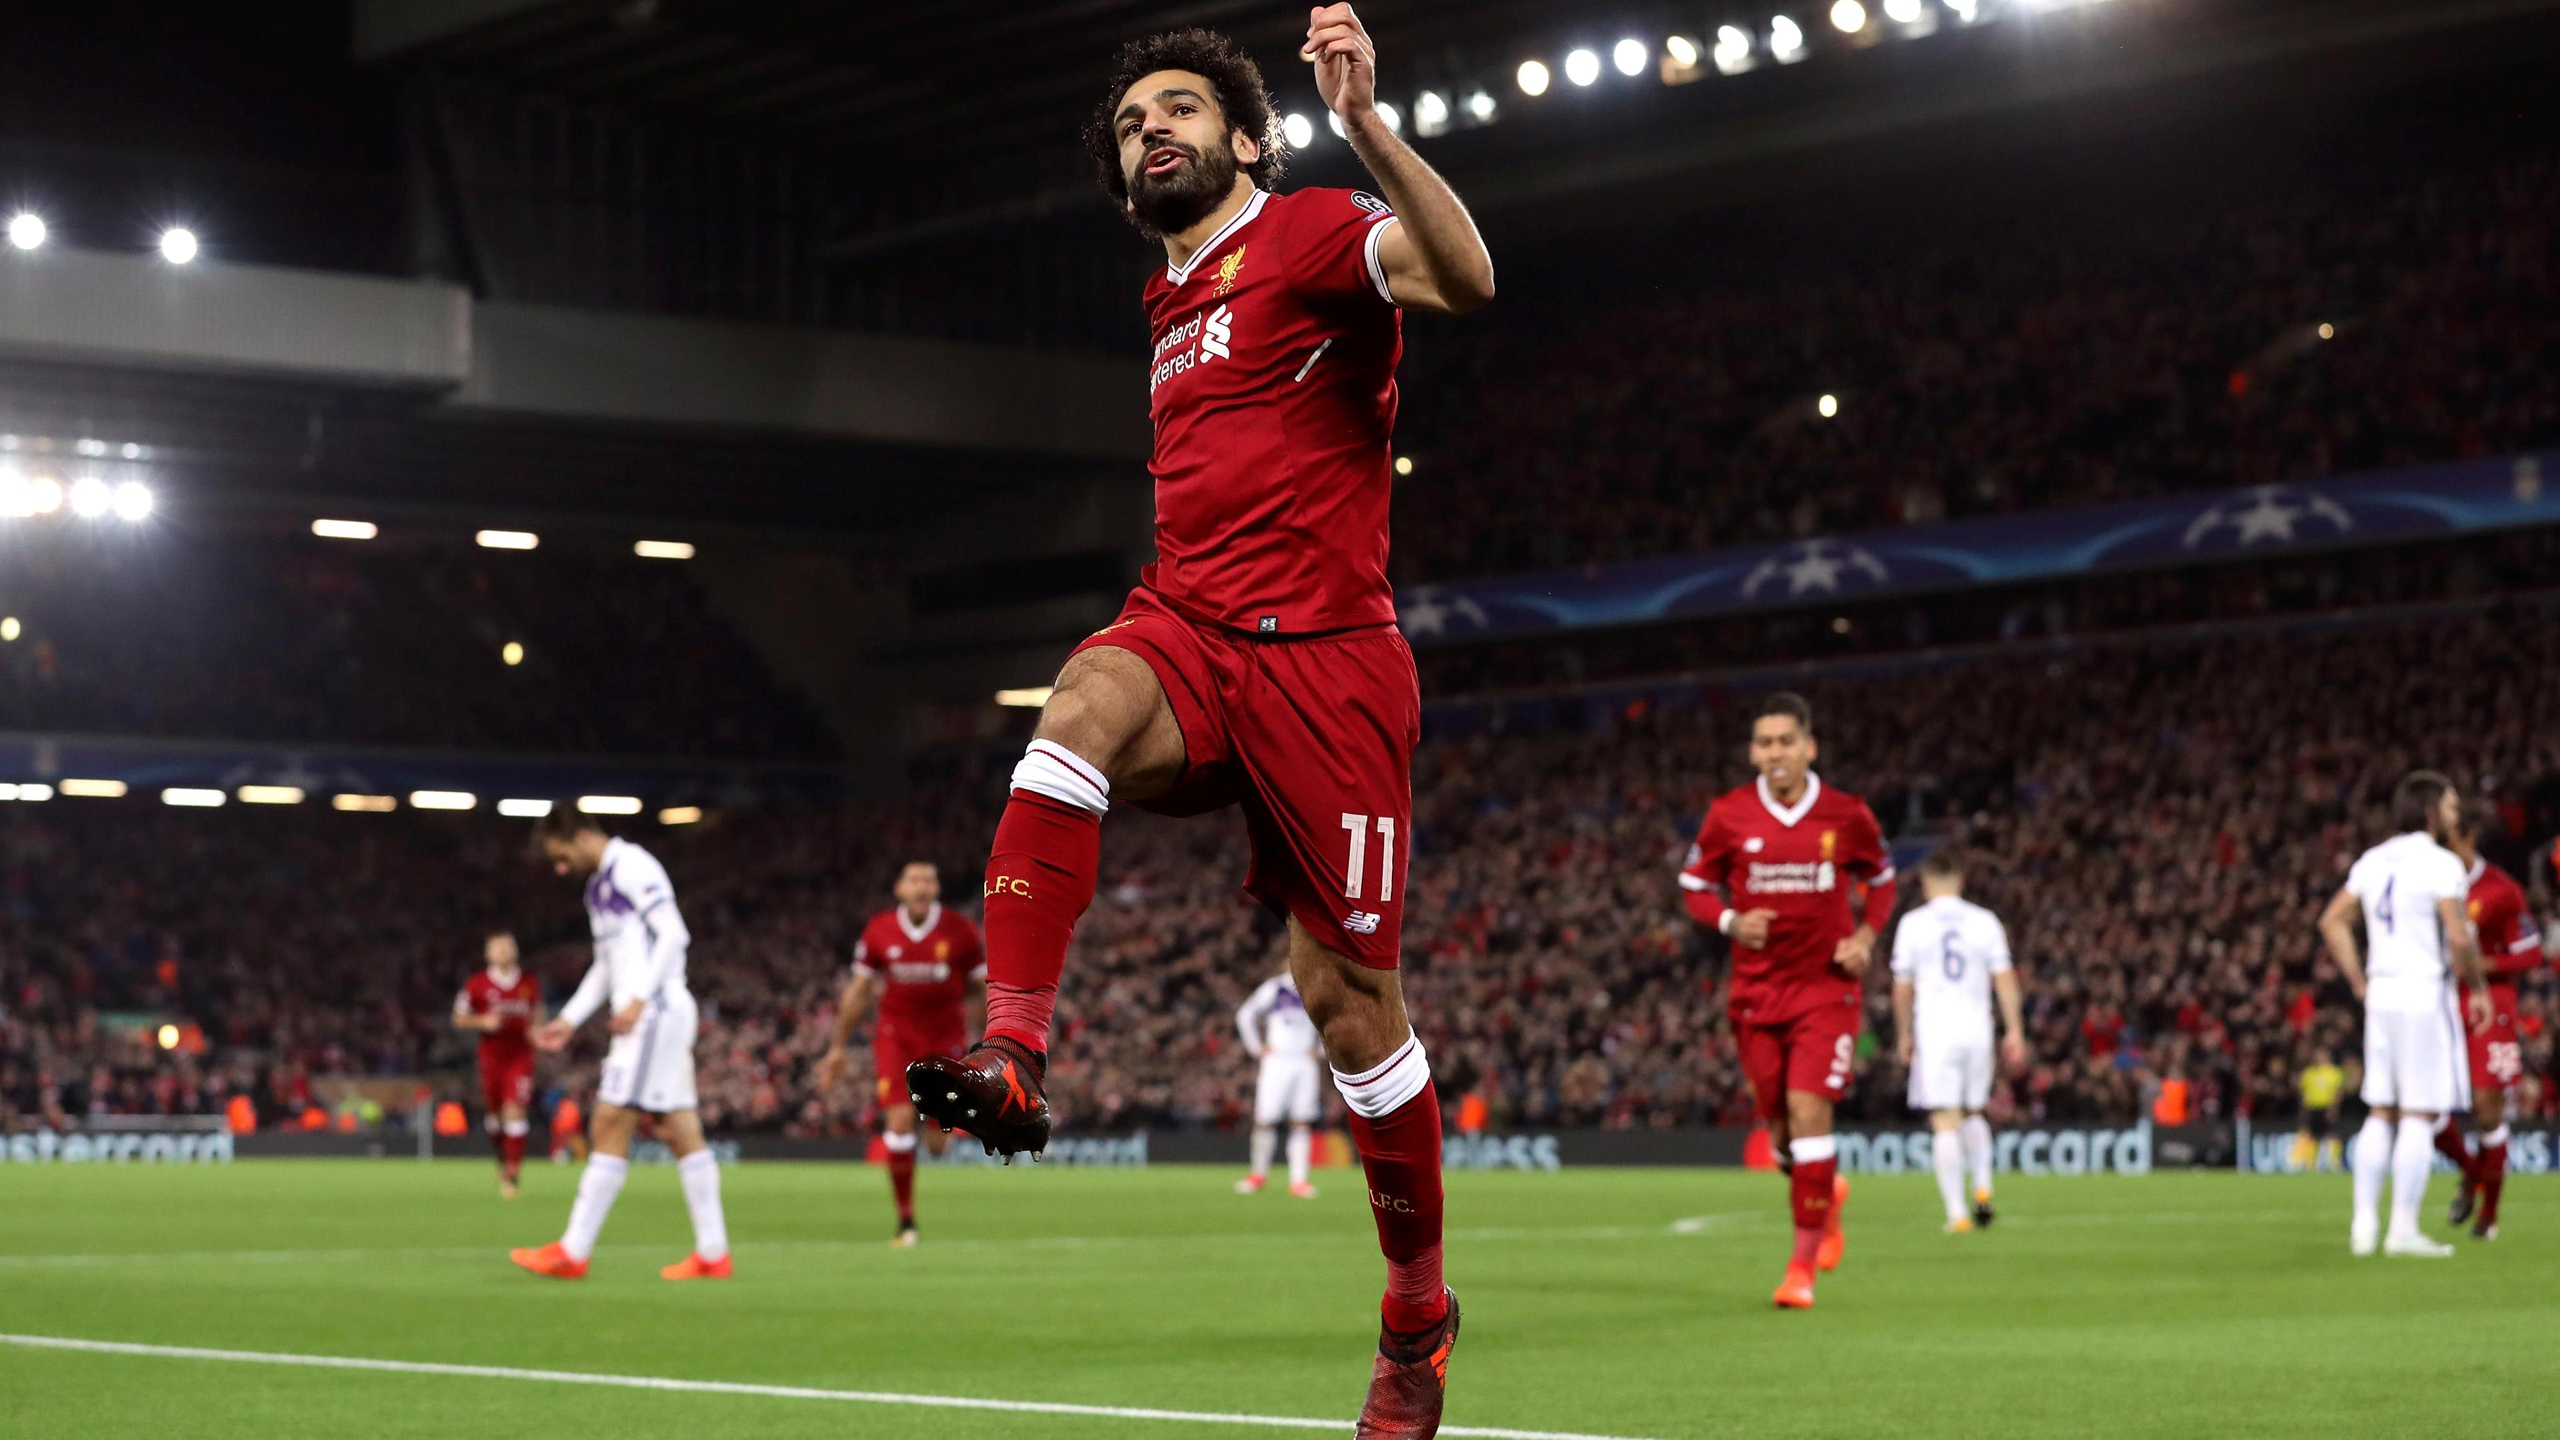 Download mobile wallpaper Sports, Soccer, Egyptian, Mohamed Salah for free.